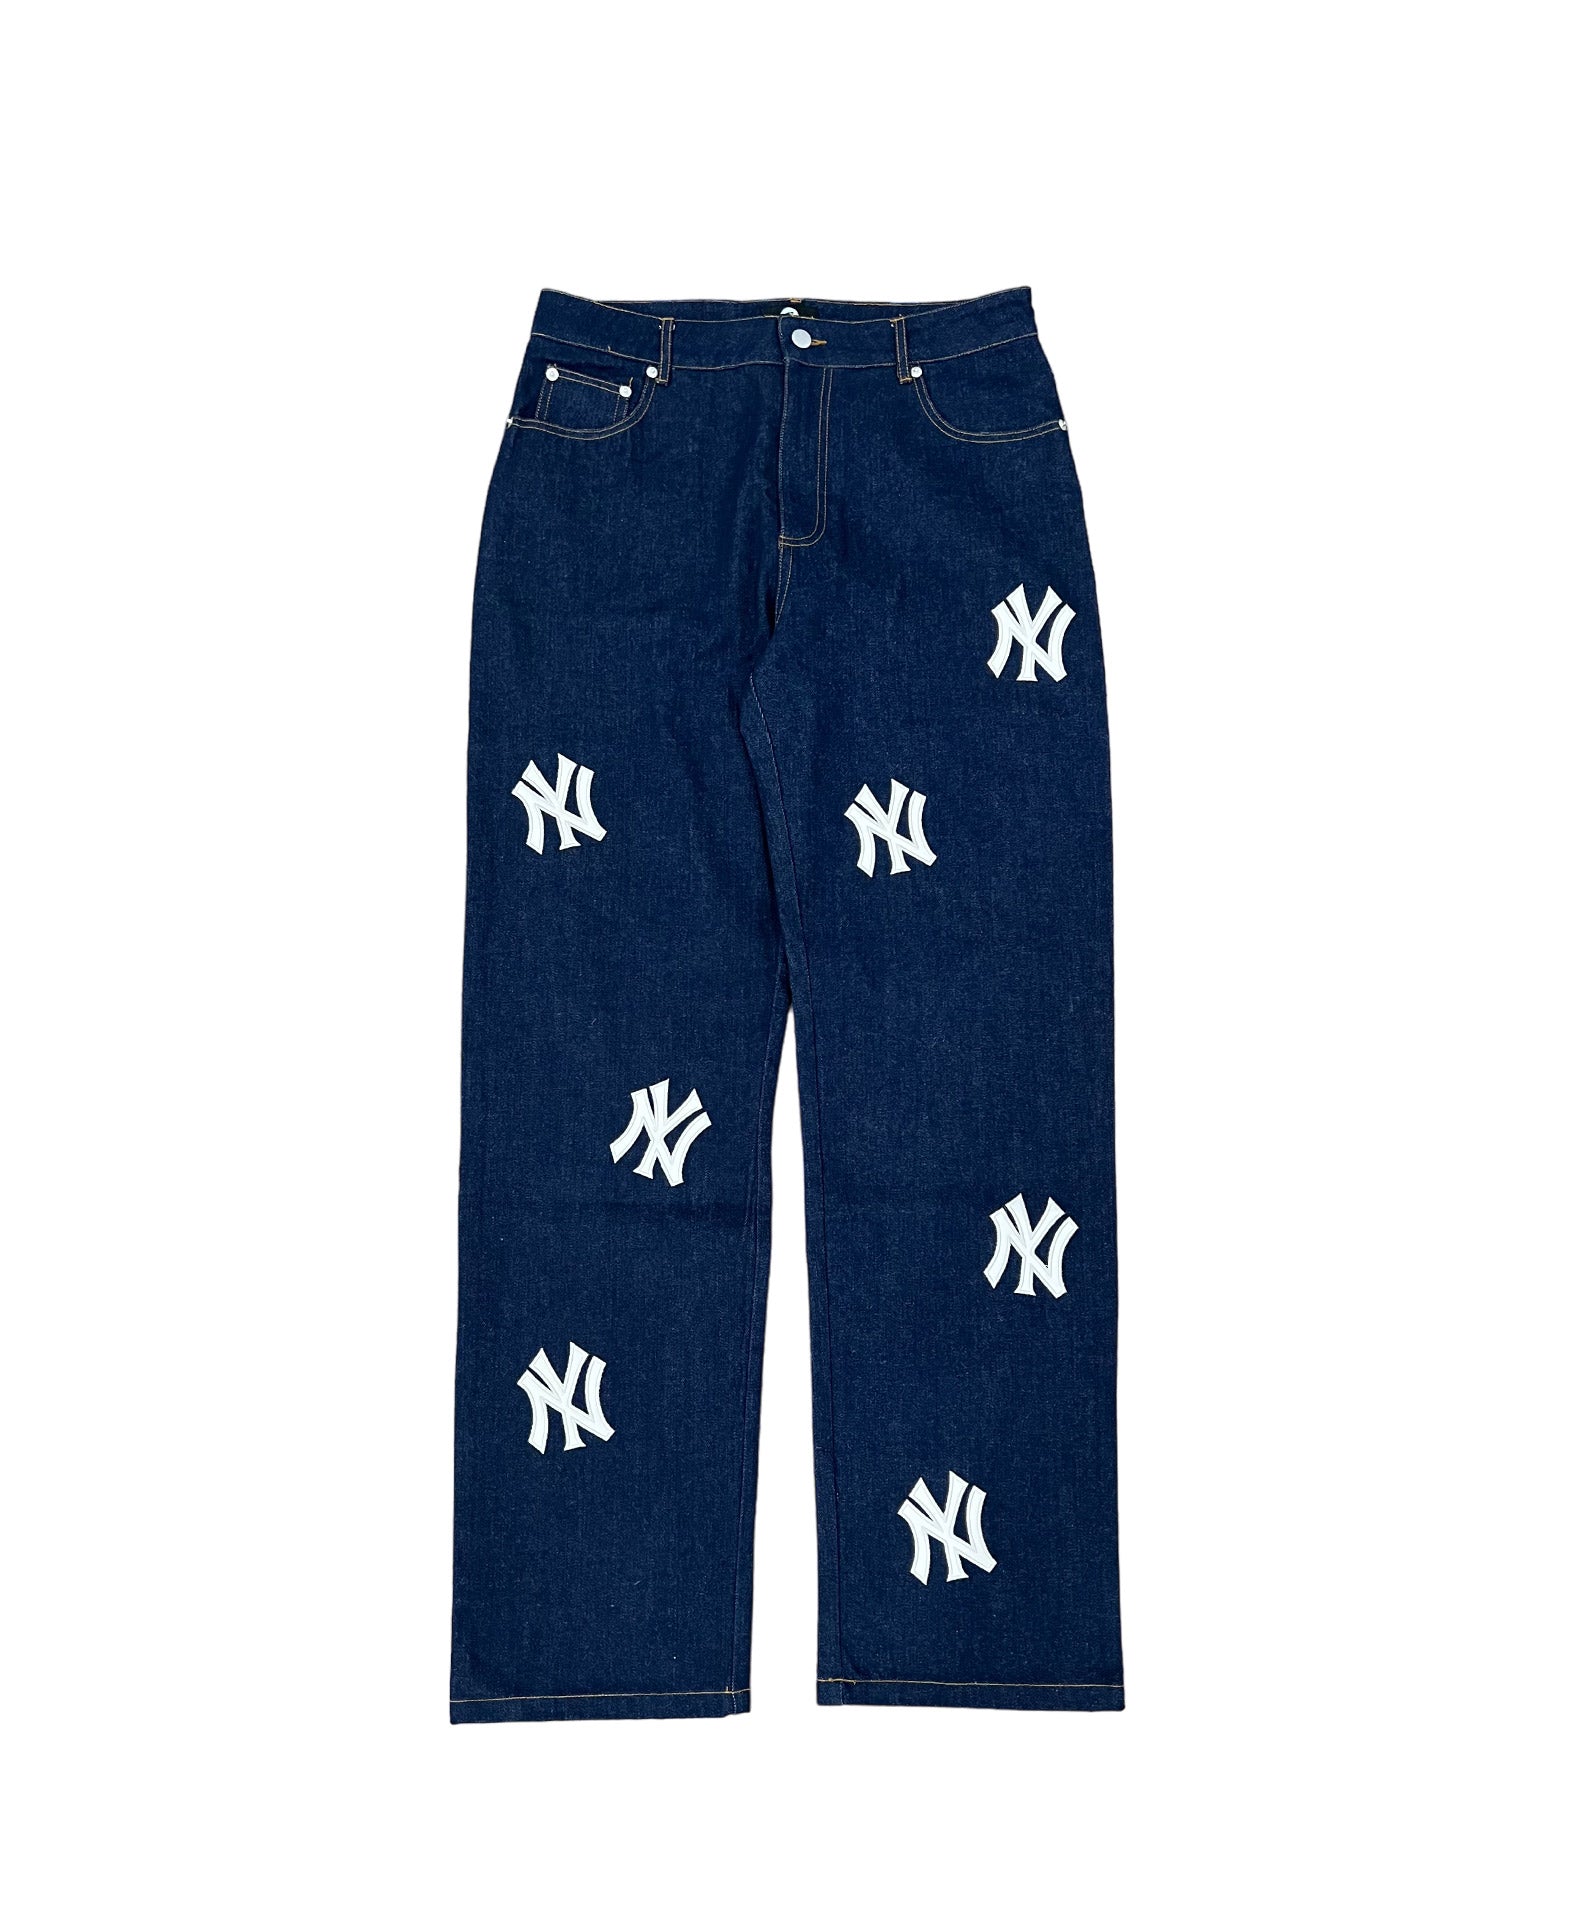 NY Patch Jeans - Navy